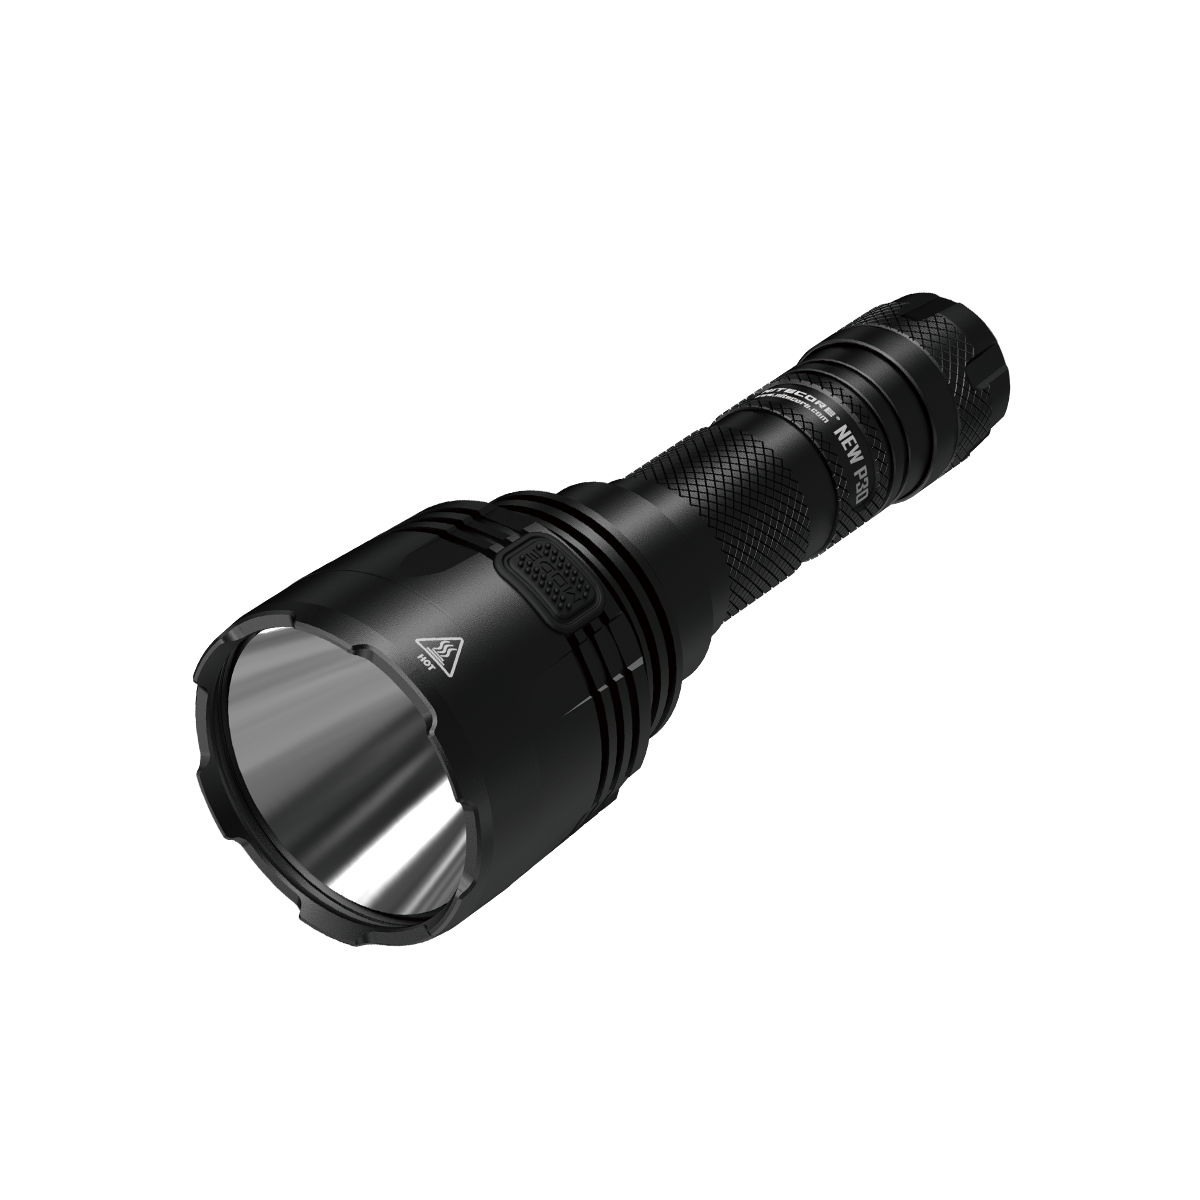 

Nitecore NEW P30 Xp-l Hi V3 1000LM Long Range LED Hunting Flashlight 618M